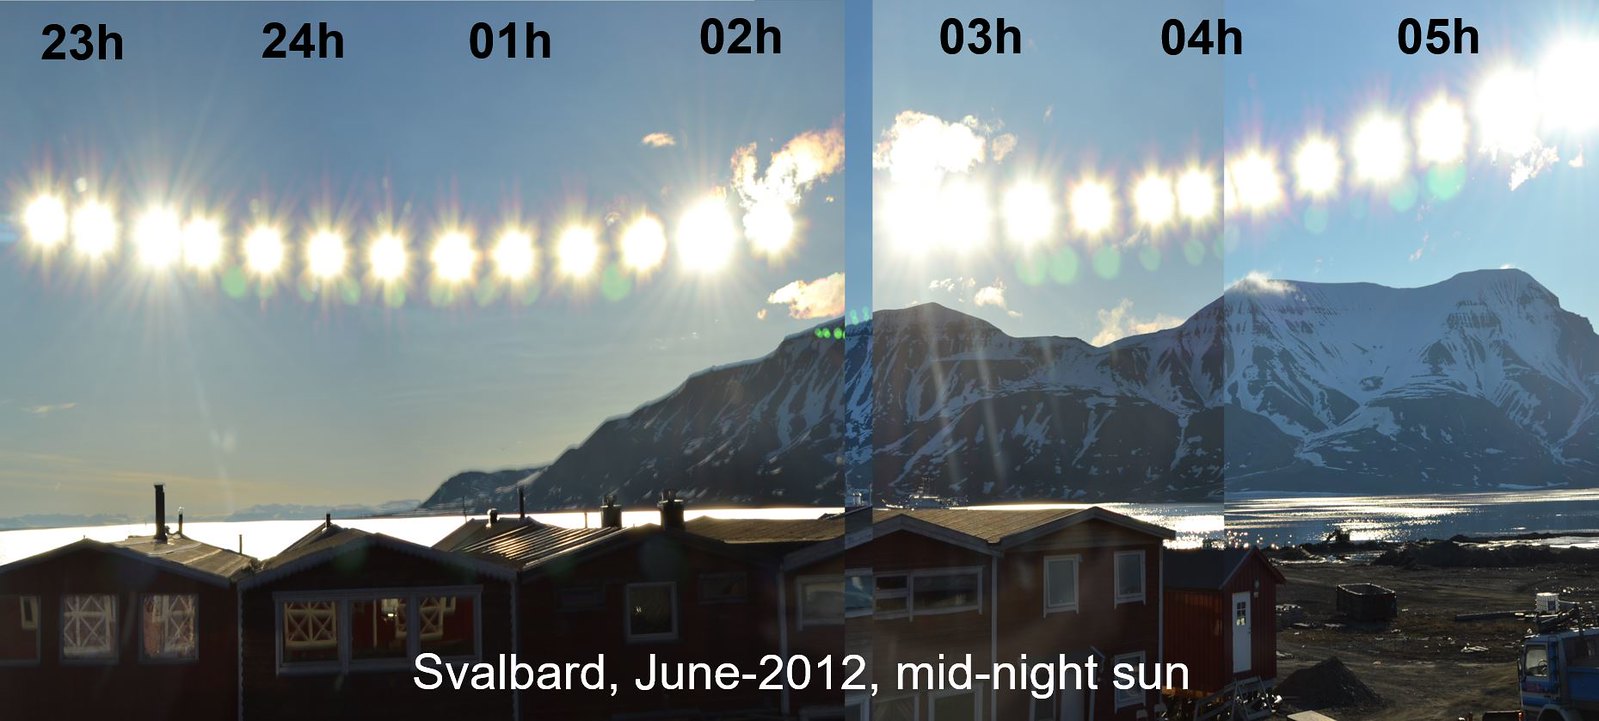 Svalbard. Midnight Sun composition from the sleep hut.